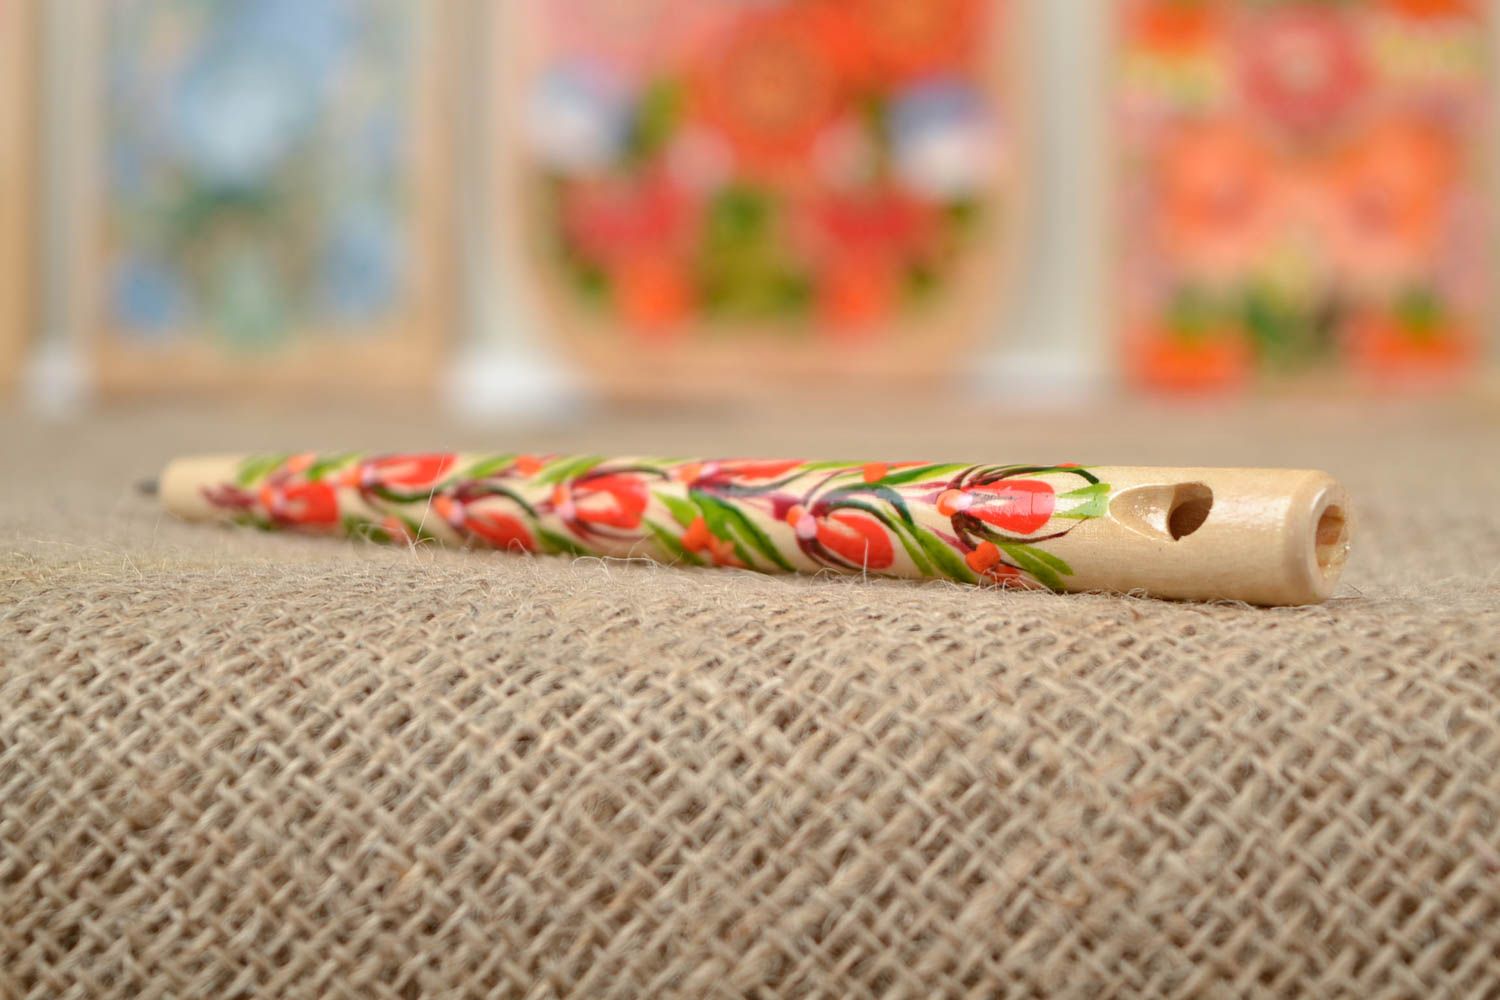 Эко ручка-свисток ручной работы с Петриковской росписью сувенирная в этно стиле фото 1